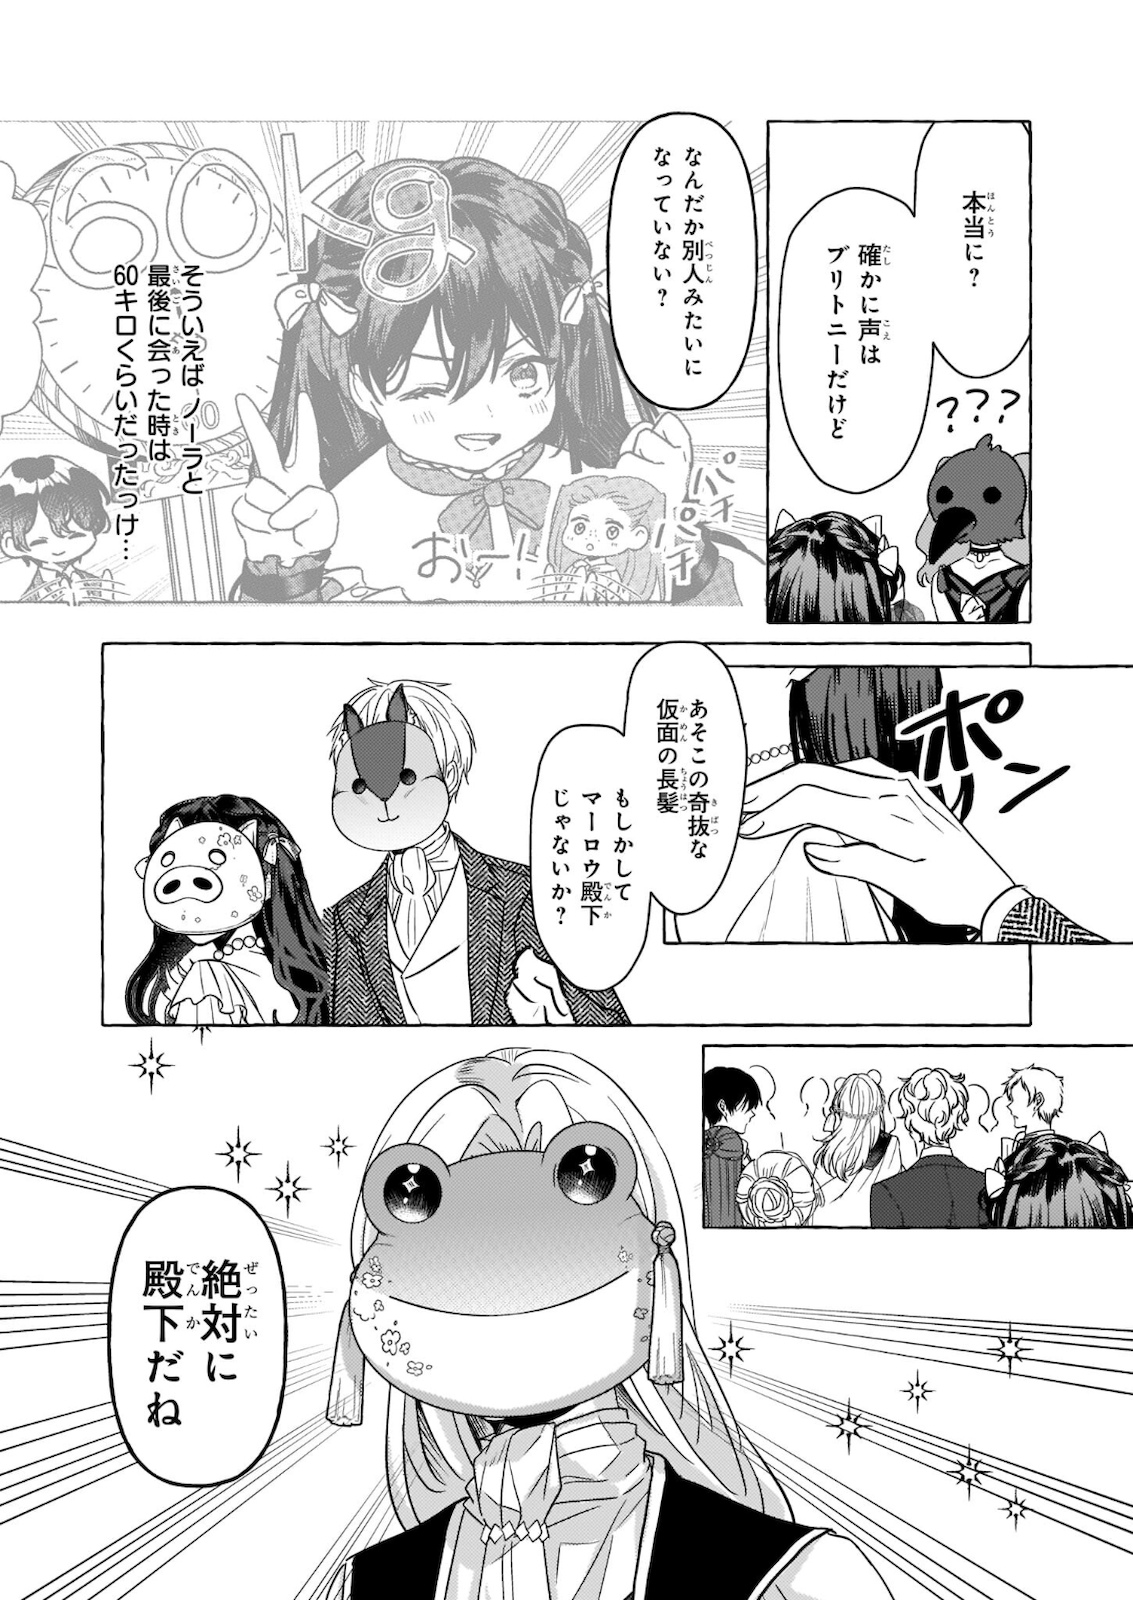 Tenseisaki ga Shoujo Manga no Shirobuta Reijou datta reBoooot! - Chapter 10.2 - Page 1